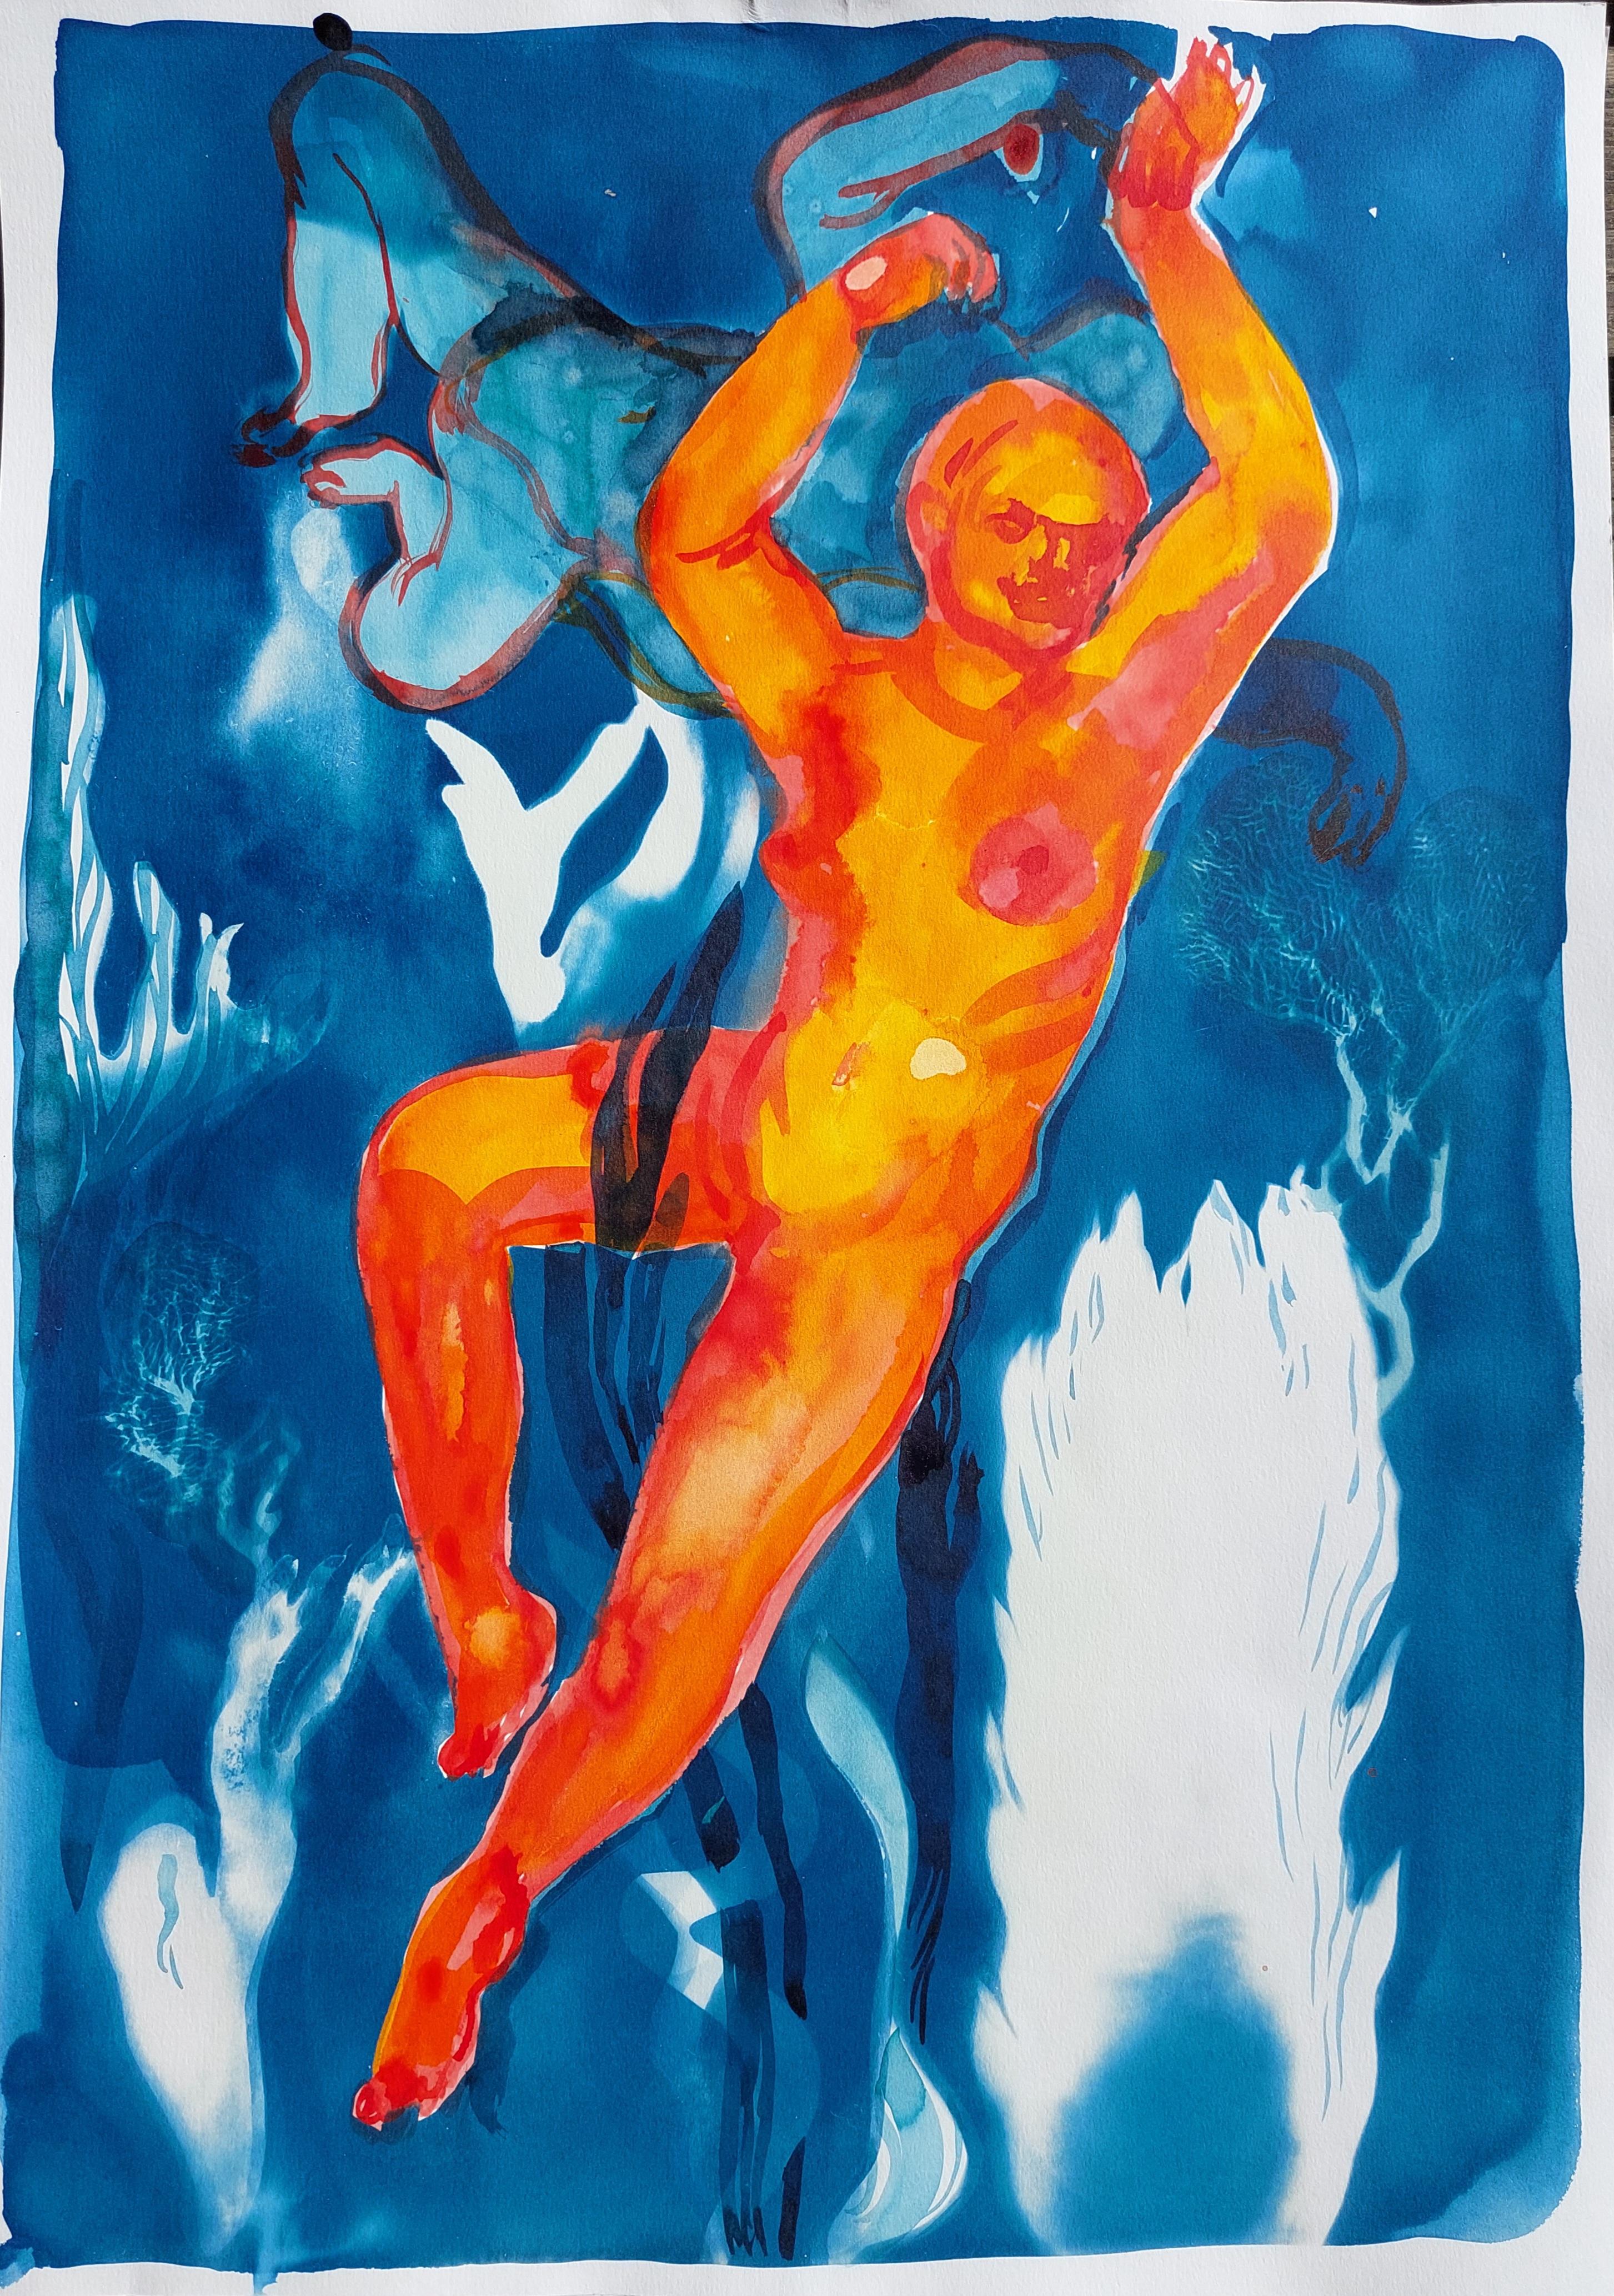 Unbenannt  - Eine orangefarbene Figur im Wasser,  Tinte und Cyanotypie – Neuer Expressionismus